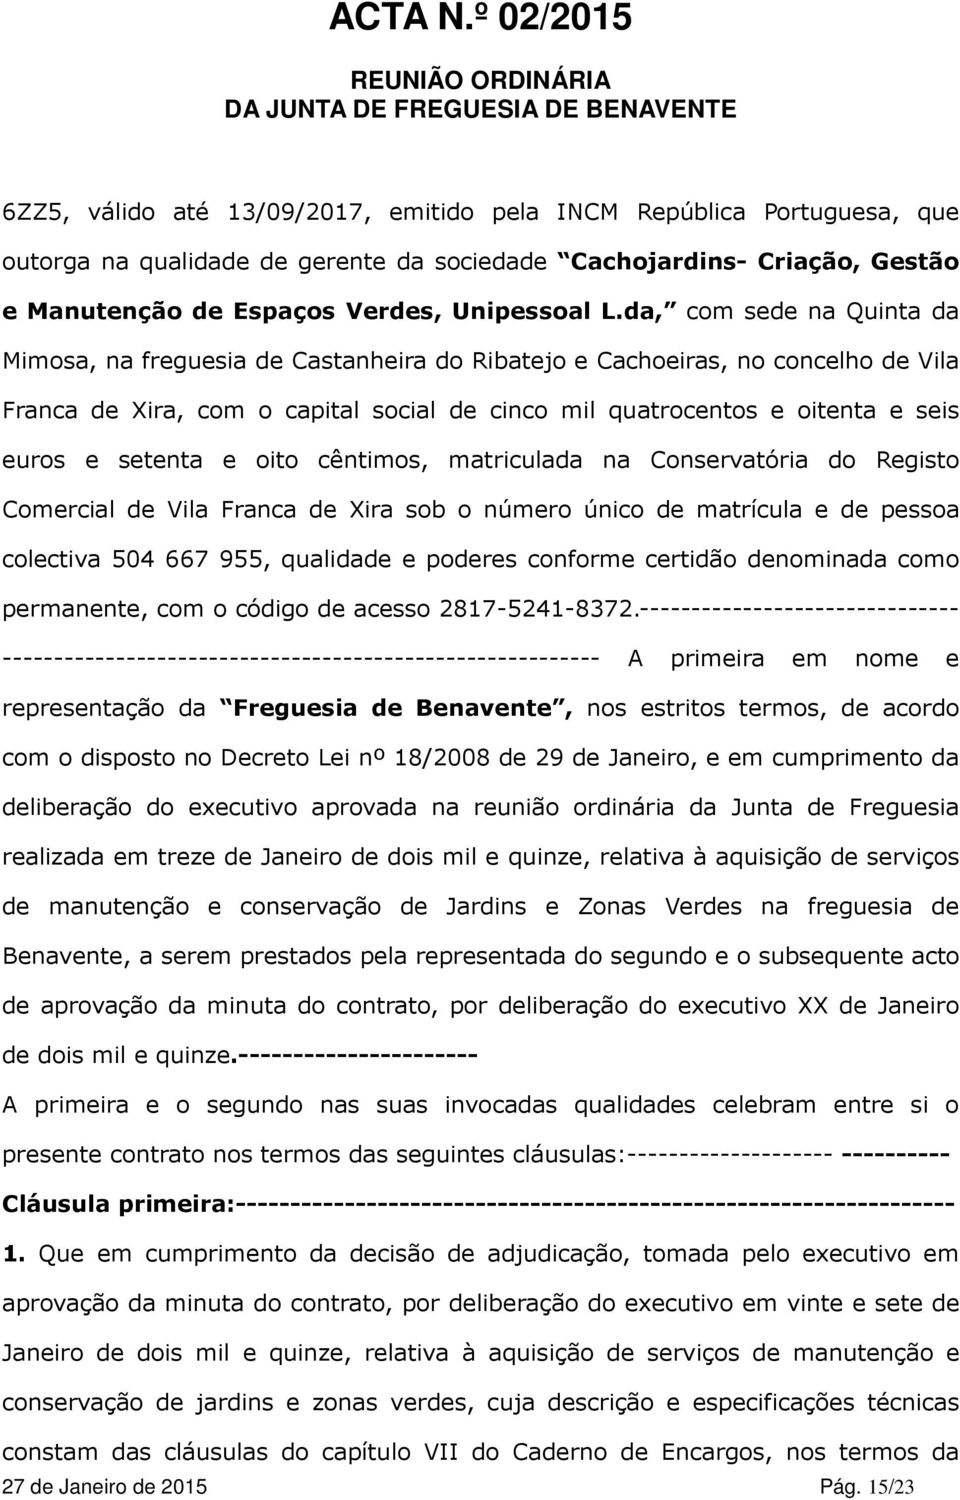 setenta e oito cêntimos, matriculada na Conservatória do Registo Comercial de Vila Franca de Xira sob o número único de matrícula e de pessoa colectiva 504 667 955, qualidade e poderes conforme